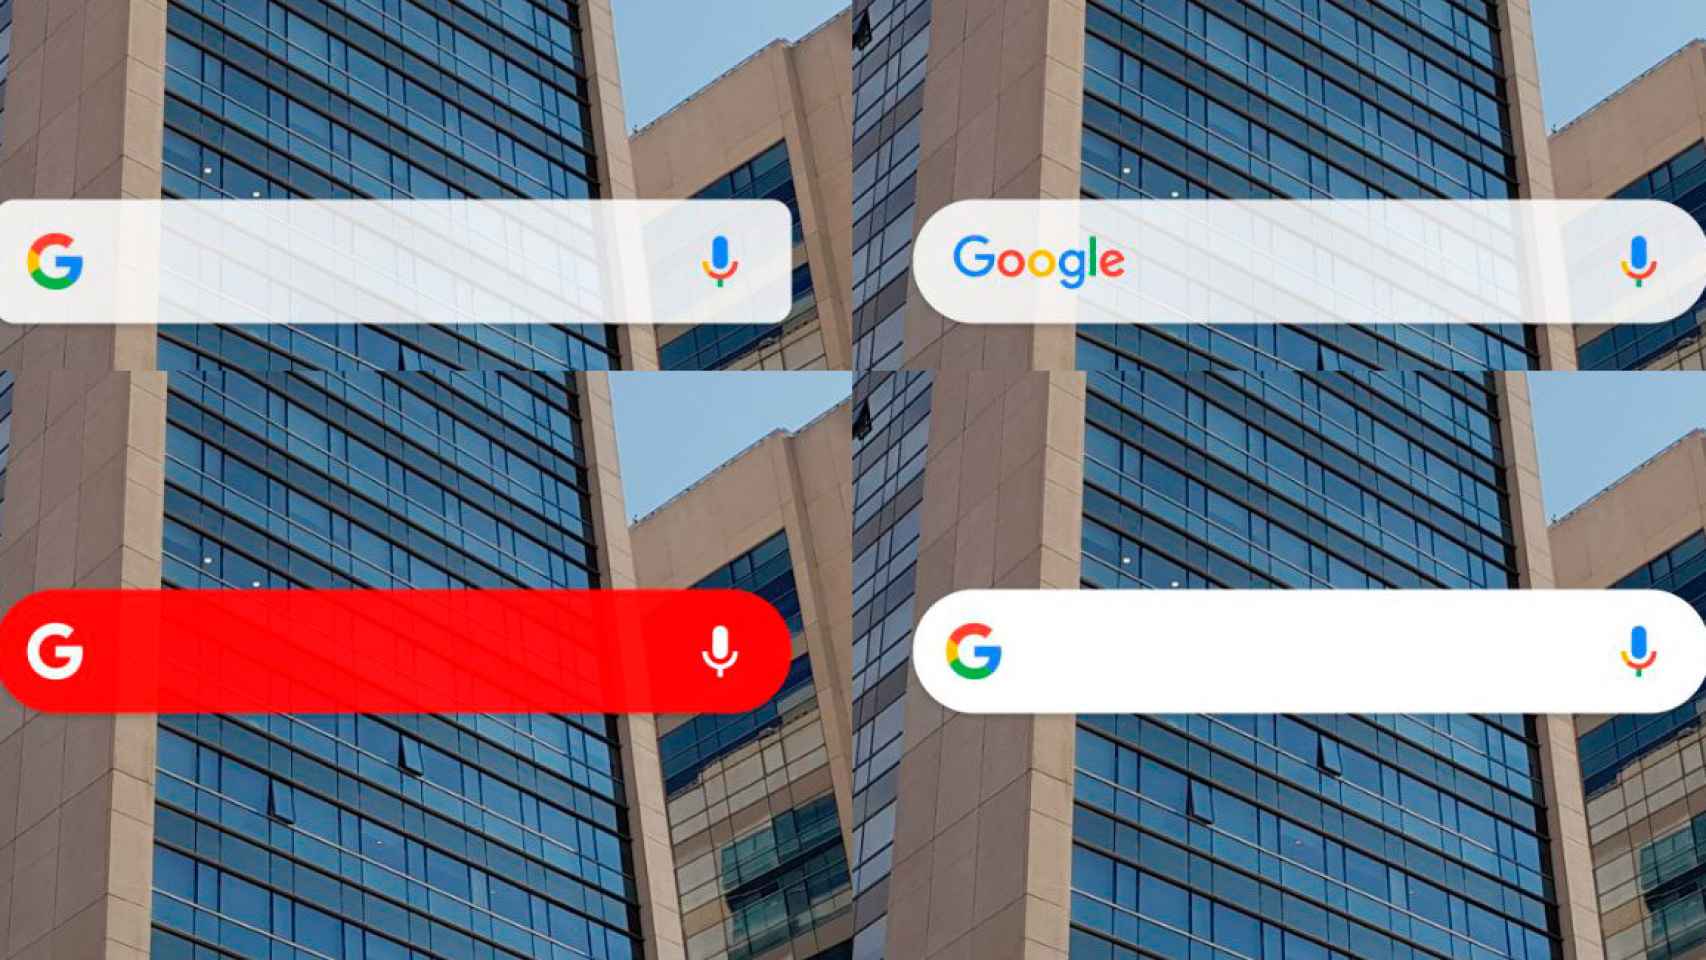 Personaliza el widget de búsqueda de Google en Android